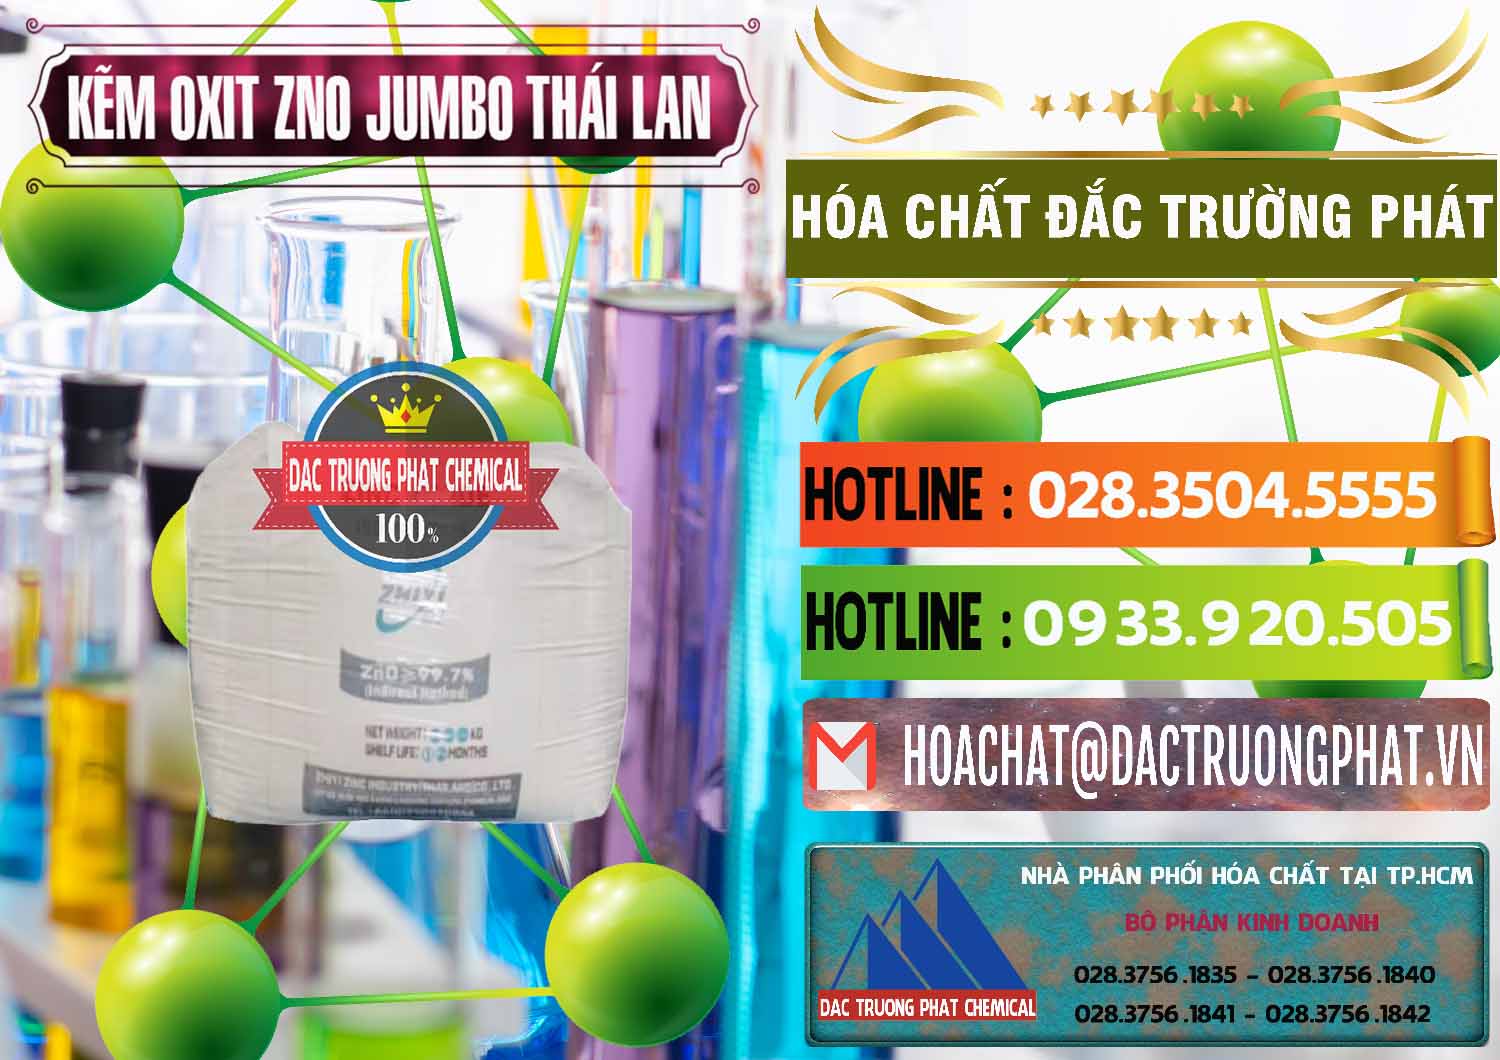 Đơn vị bán - cung ứng Zinc Oxide - Bột Kẽm Oxit ZNO Jumbo Bành Thái Lan Thailand - 0370 - Cty chuyên nhập khẩu _ phân phối hóa chất tại TP.HCM - cungcaphoachat.com.vn